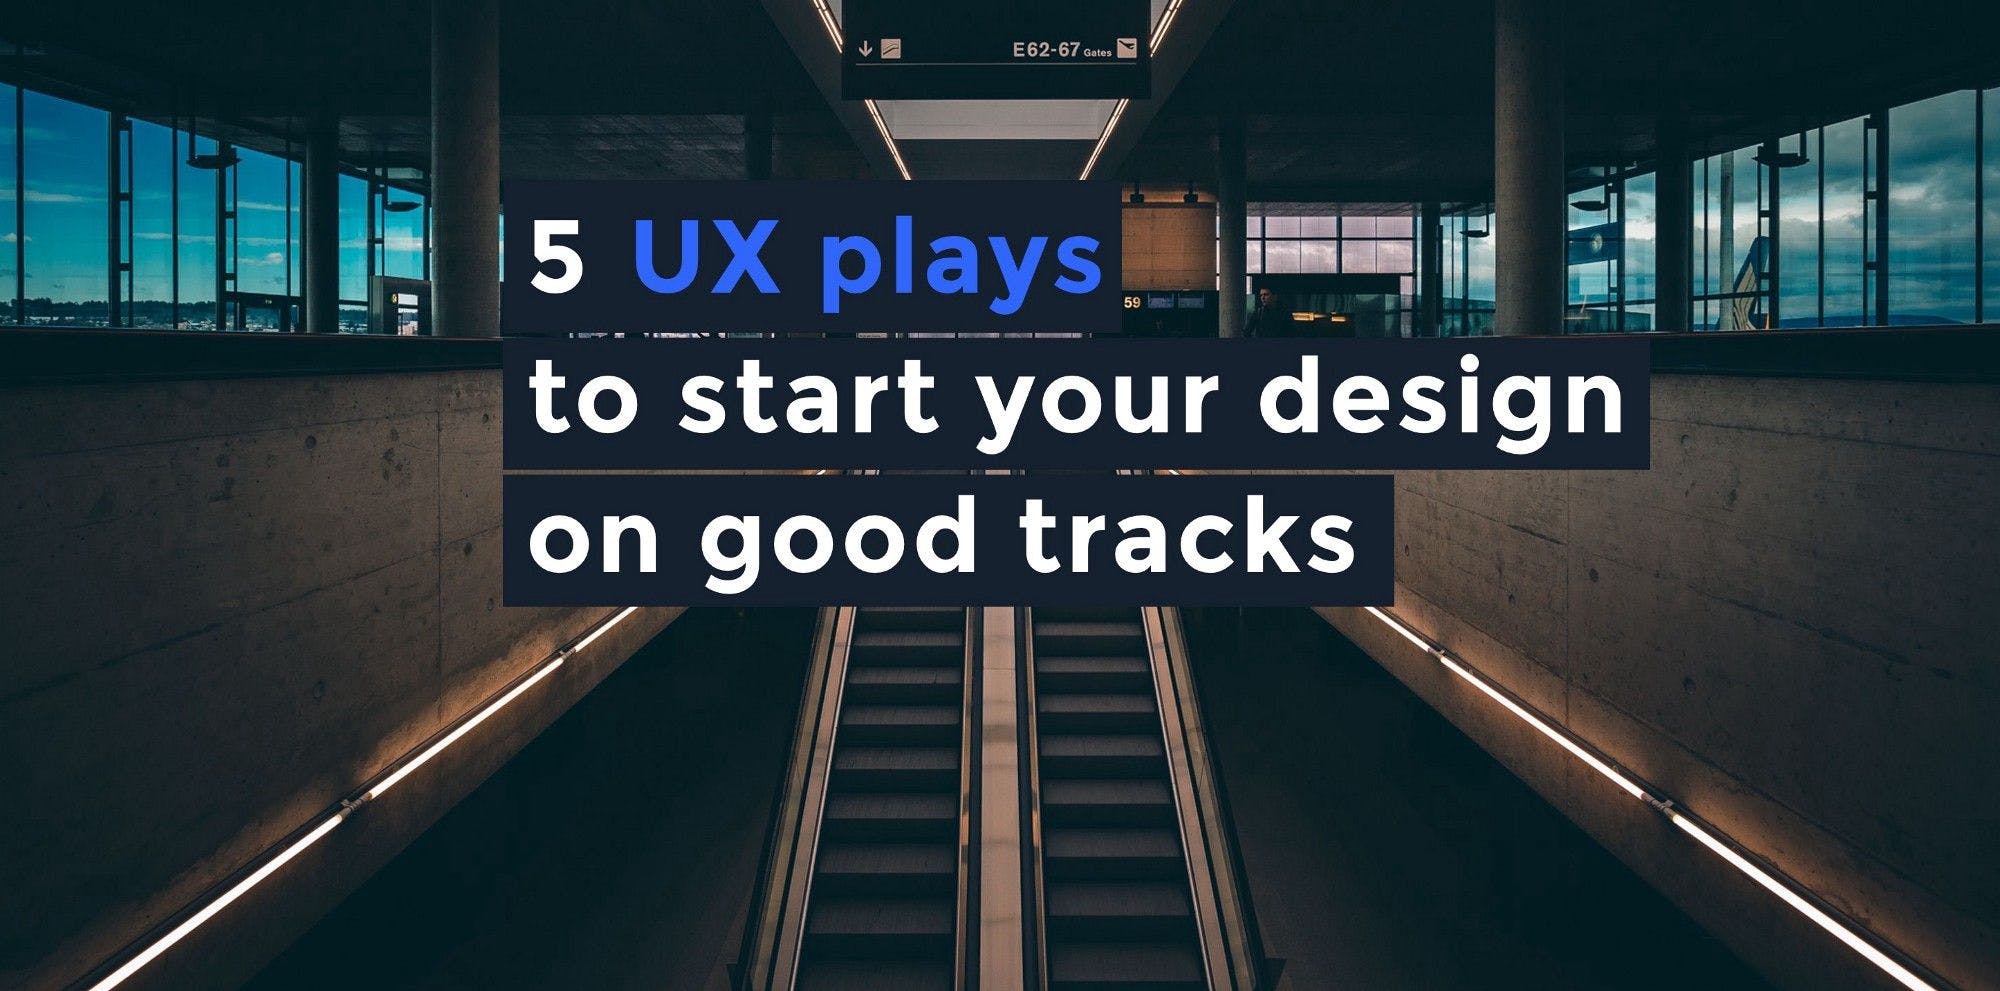 這篇文章的標題：5 UX plays to start your design on good tracks，背景照片是地鐵站出口手扶梯